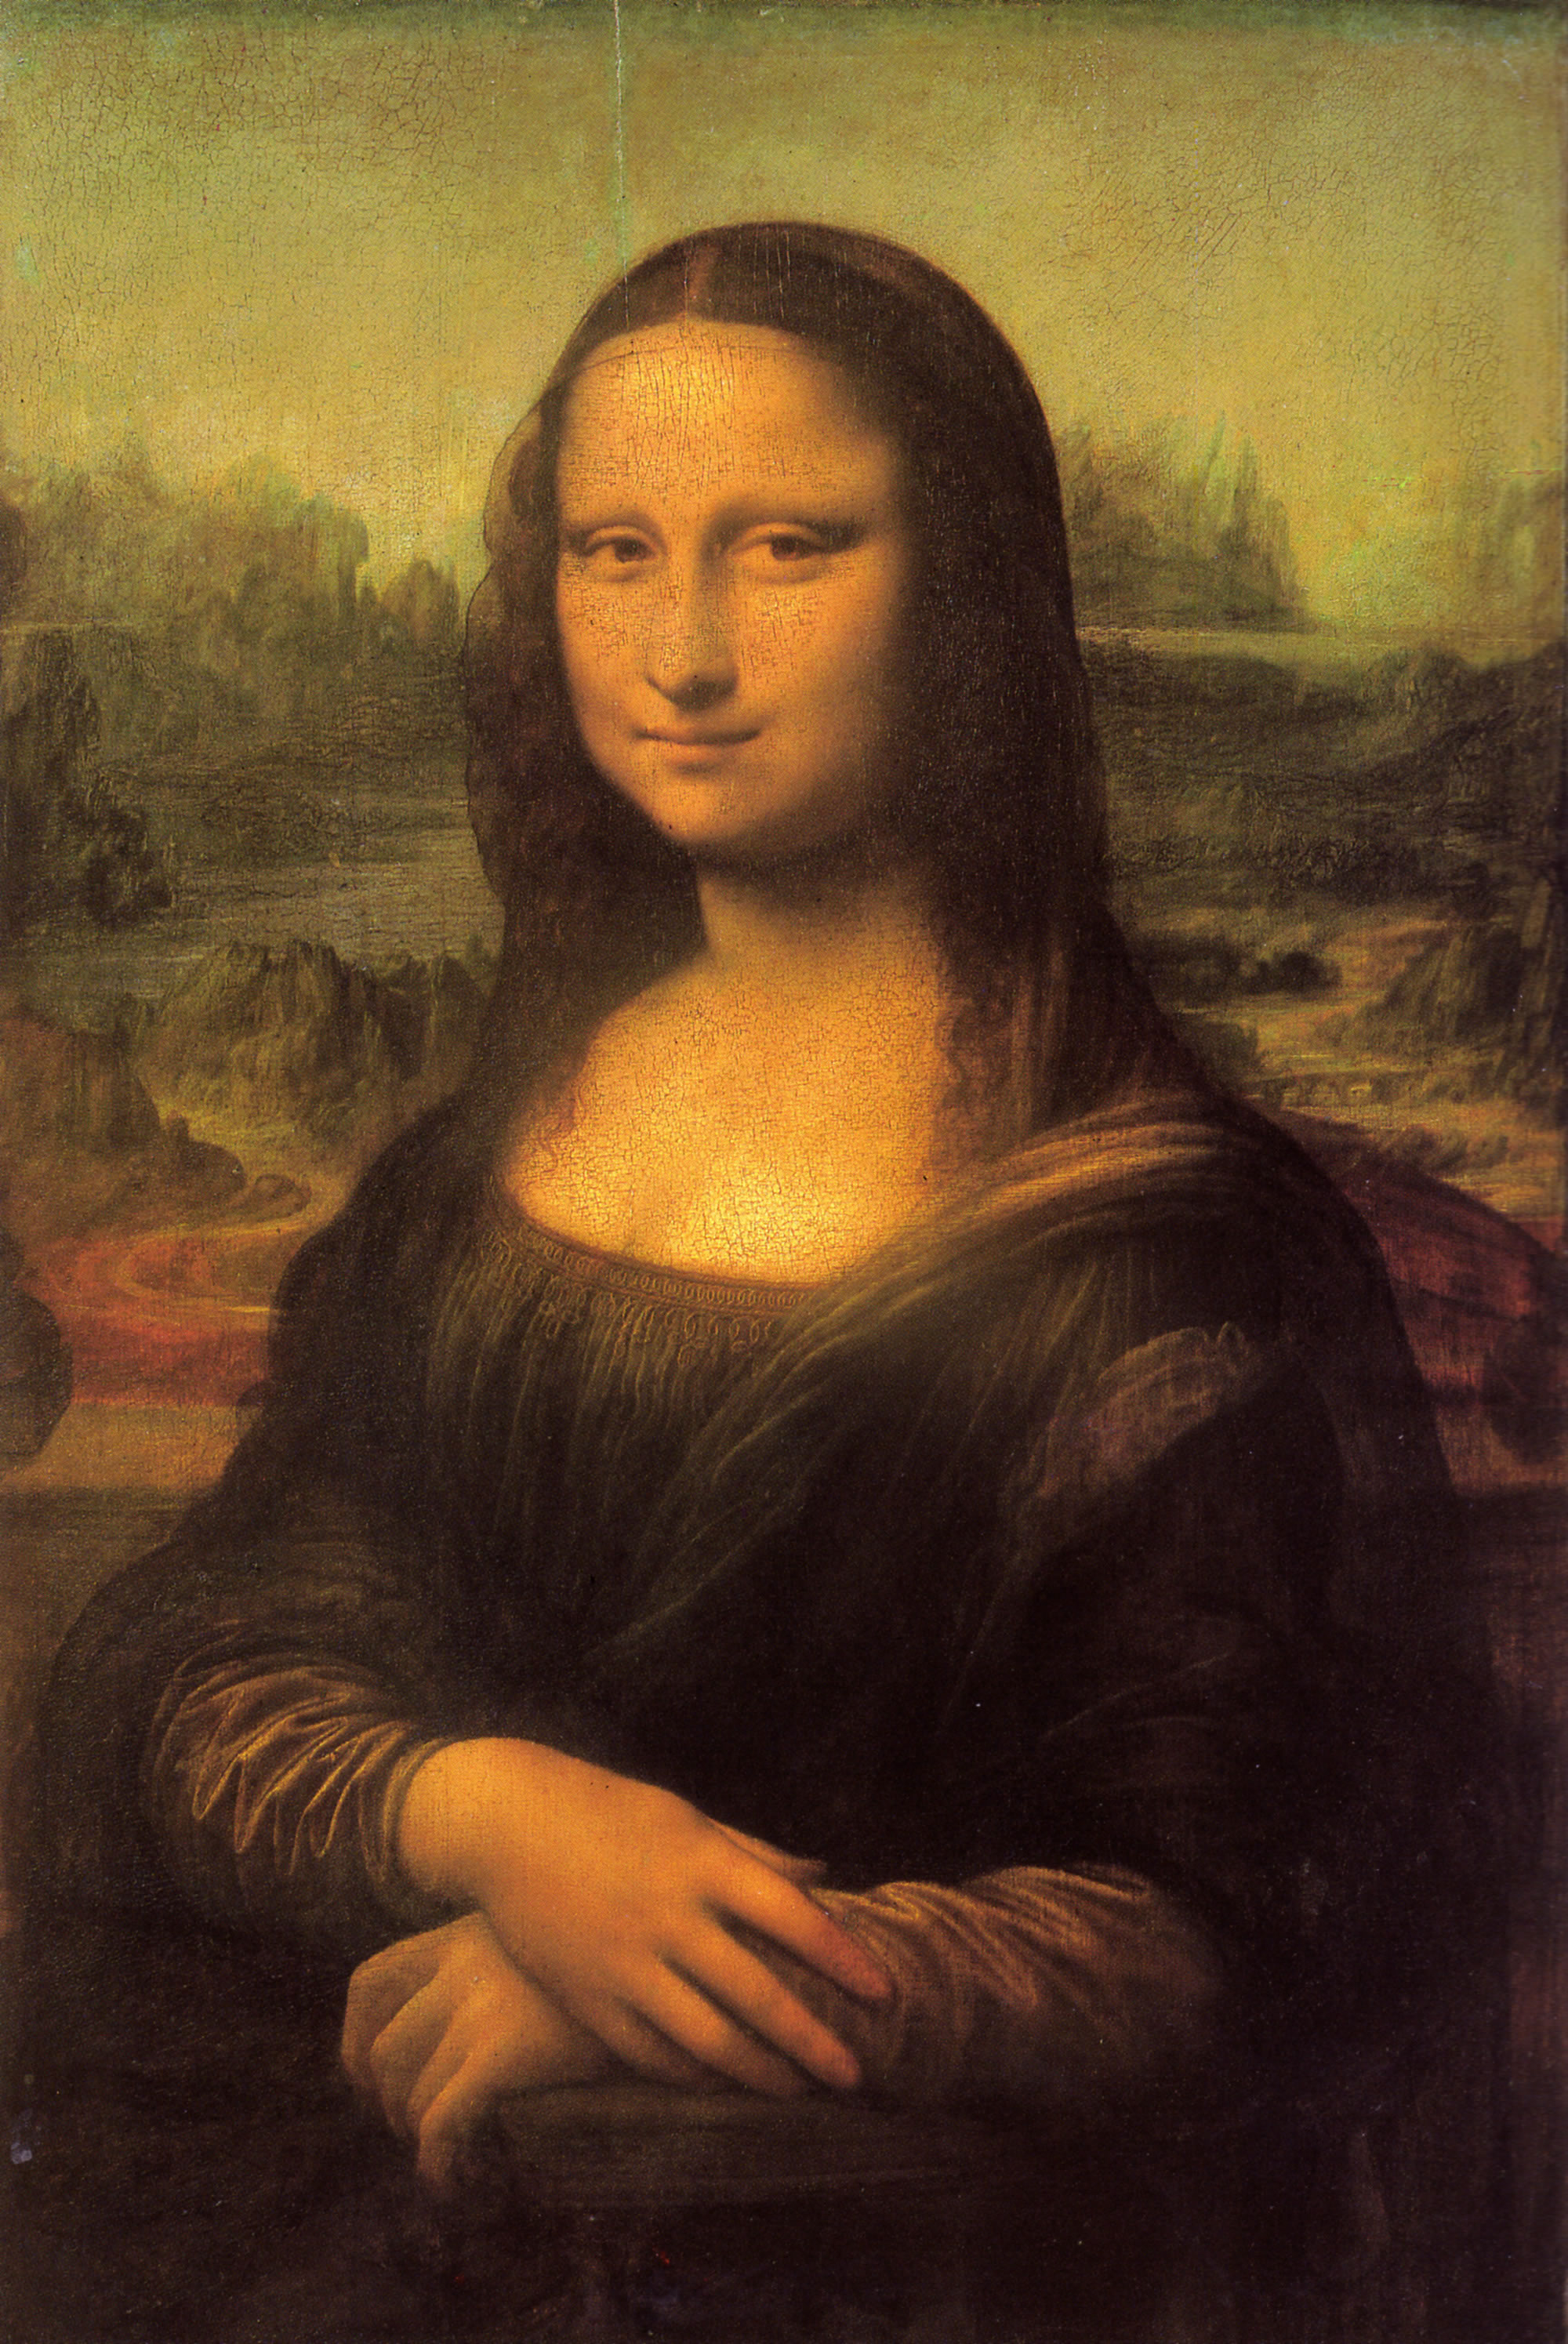 Leonardo Da Vinci - La gioconda